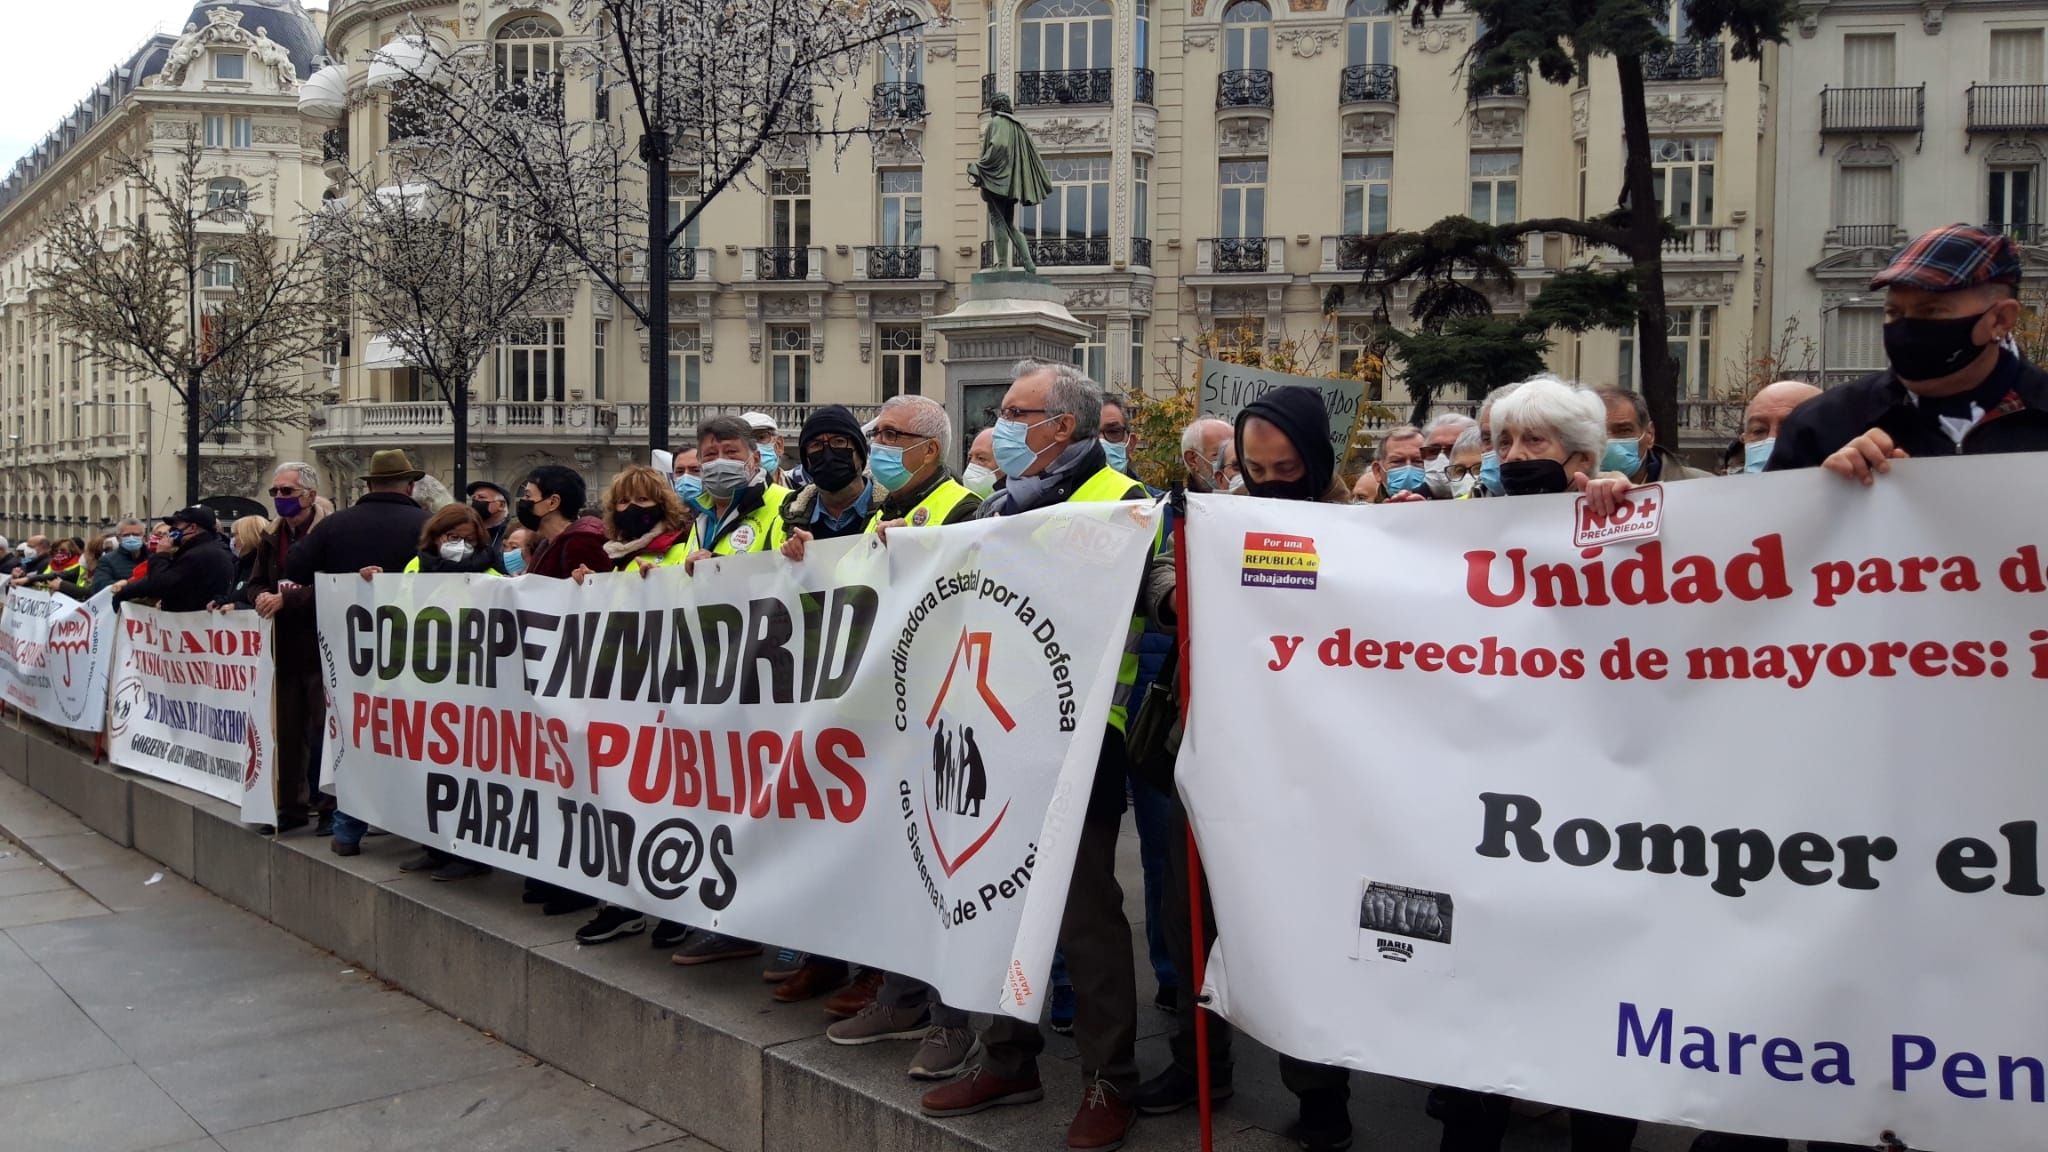 Pensionistas protestan contra la reforma de las pensiones: "Nos sentimos engañados y abandonados"